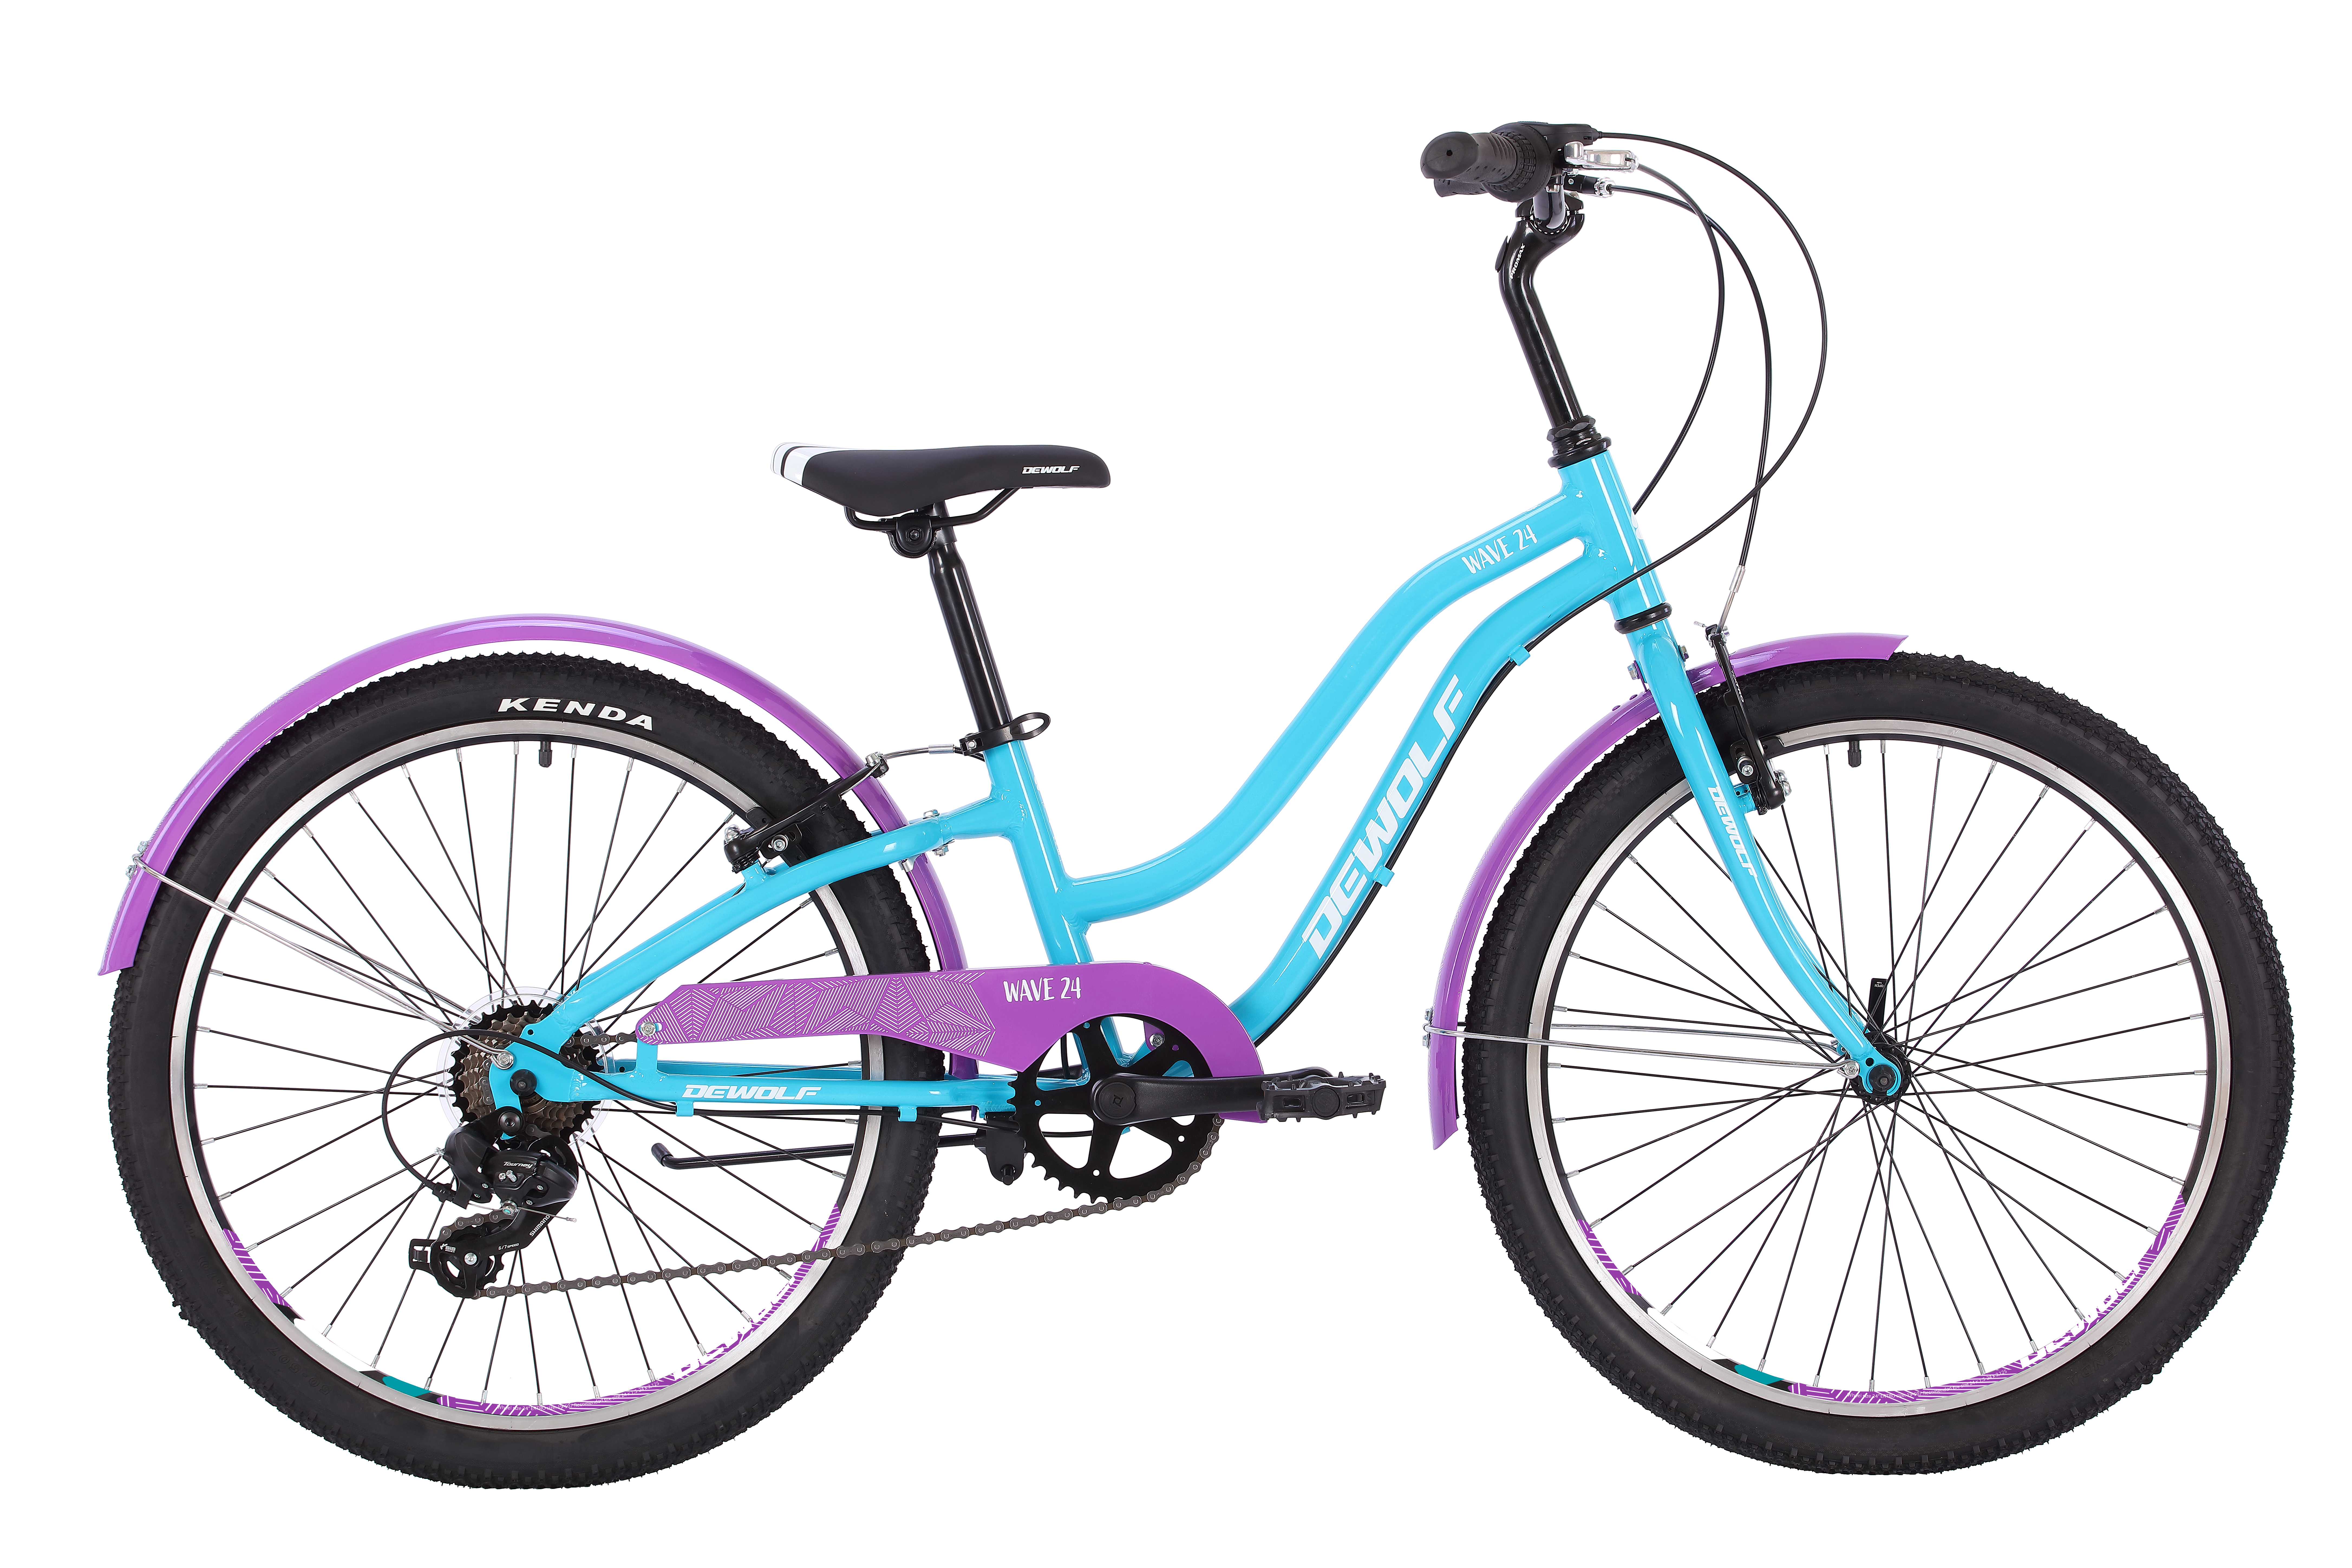 Фото выбрать и купить велосипед dewolf wave 24 (2022) teal/white/purple велосипеды с доставкой, в магазине или со склада в СПб - большой выбор для подростка, велосипед dewolf wave 24 (2022) teal/white/purple велосипеды в наличии - интернет-магазин Мастерская Тимура